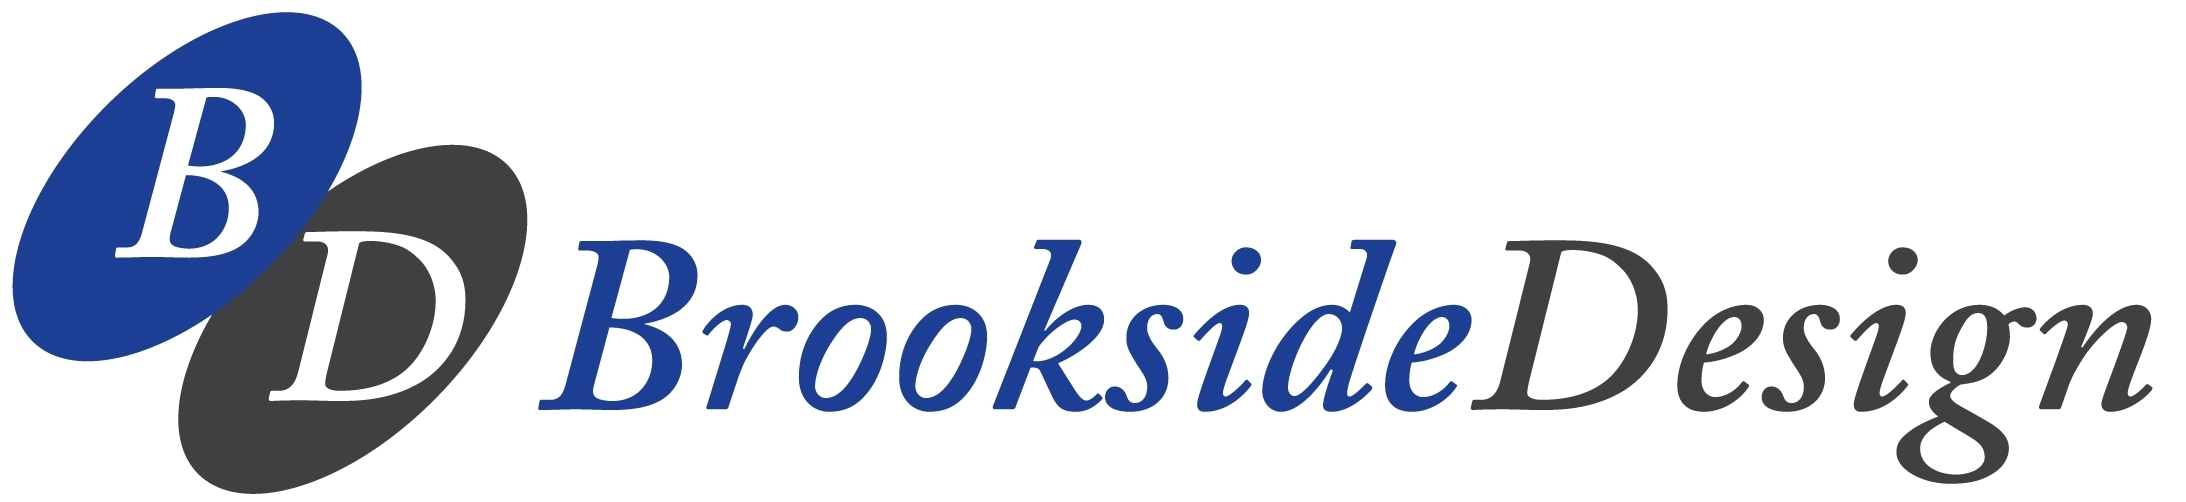 Brookside Design logo